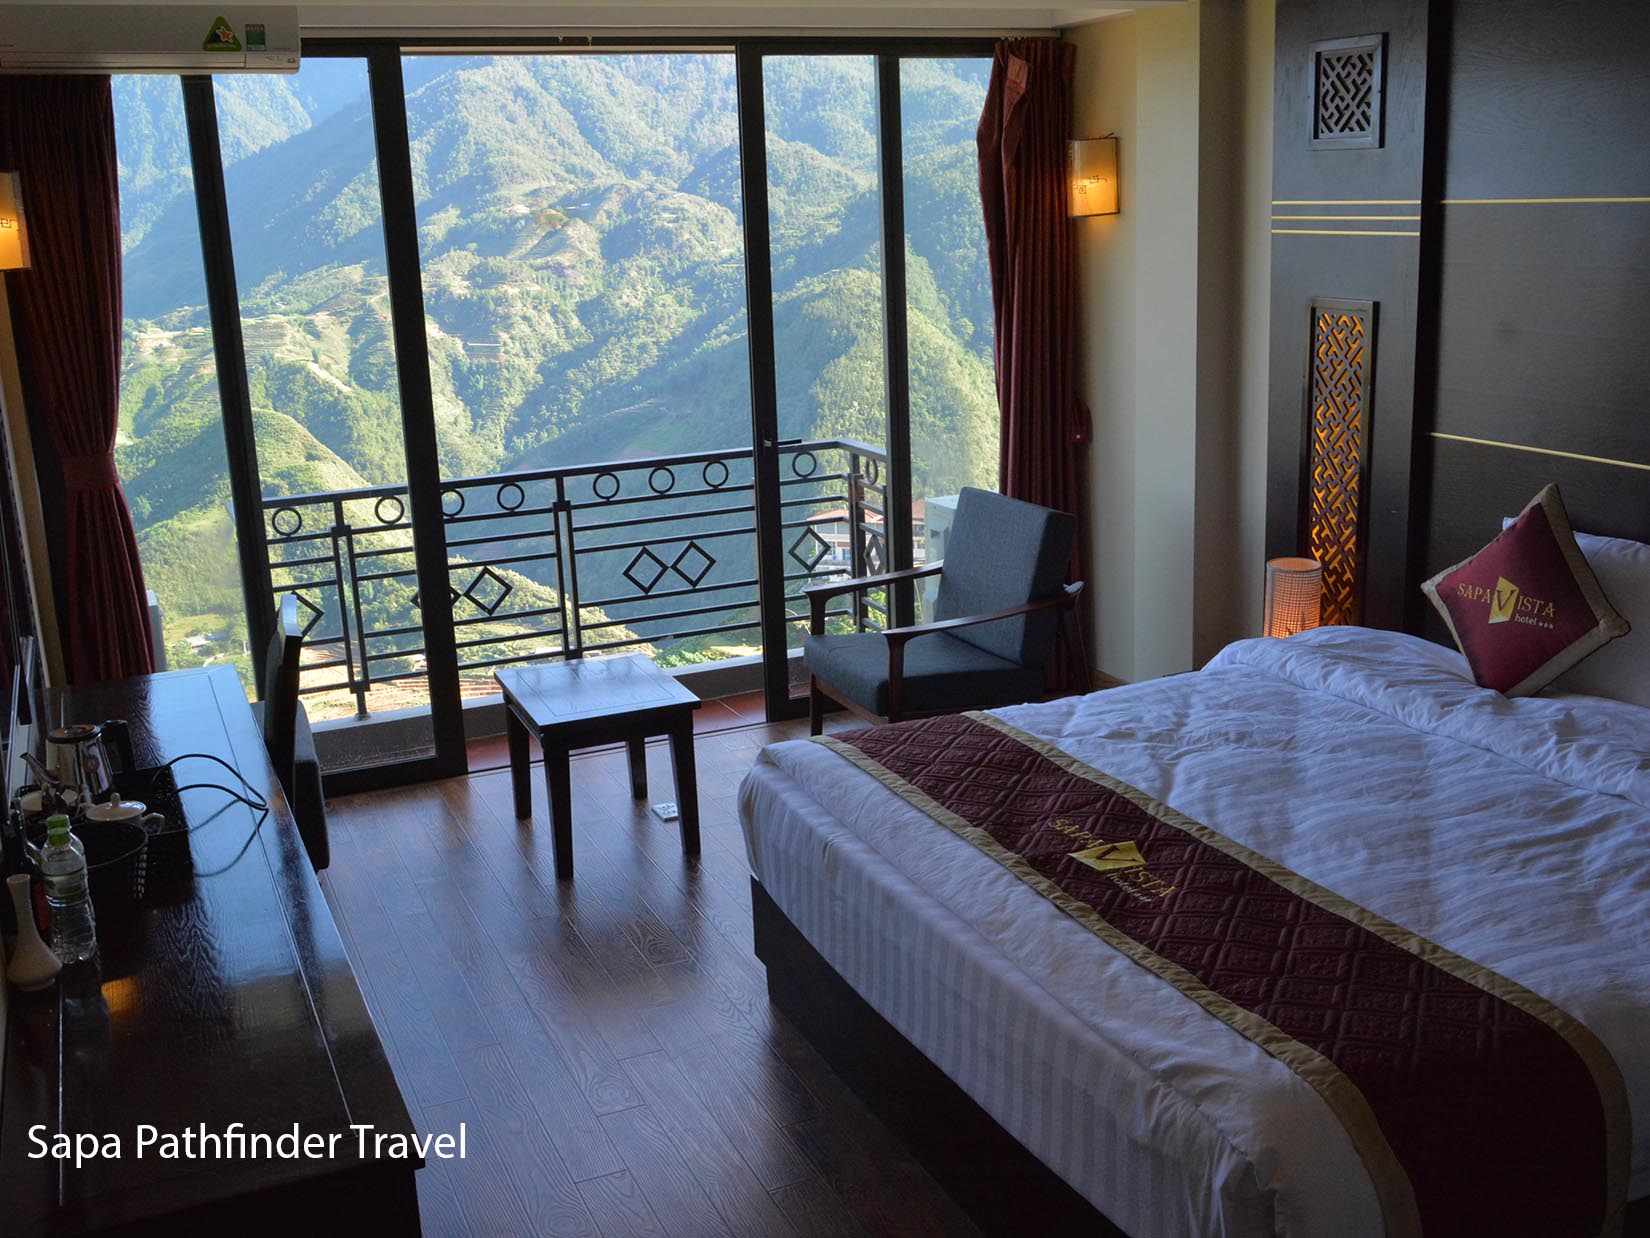 Trong Tour này, quí khách sẽ được nghỉ dưỡng tại khách sạn Vista Sapa, Khách sạn yên tĩnh, có tầm nhìn tuyệt đẹp đến dãy núi Fansipan và thung lũng Mường hoa